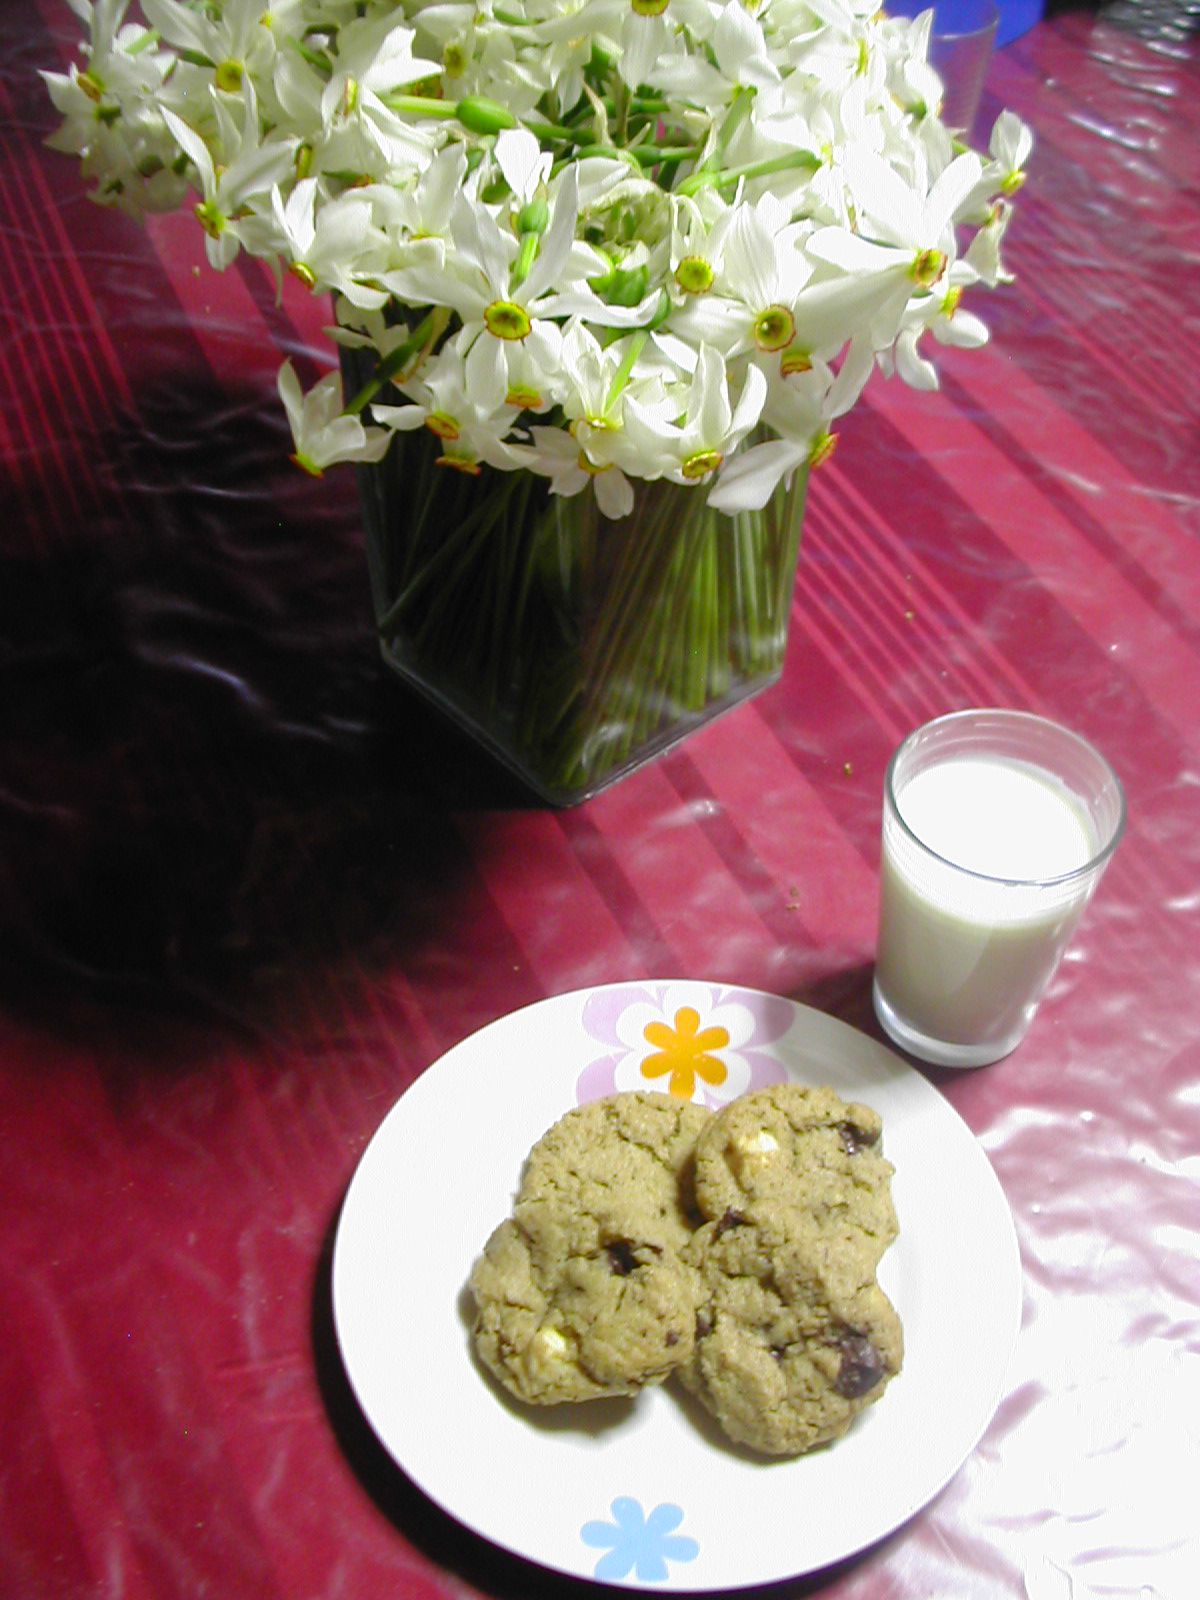 Des cookies chocolat noir et blanc accompagnés d'un verre de lait de chèvre